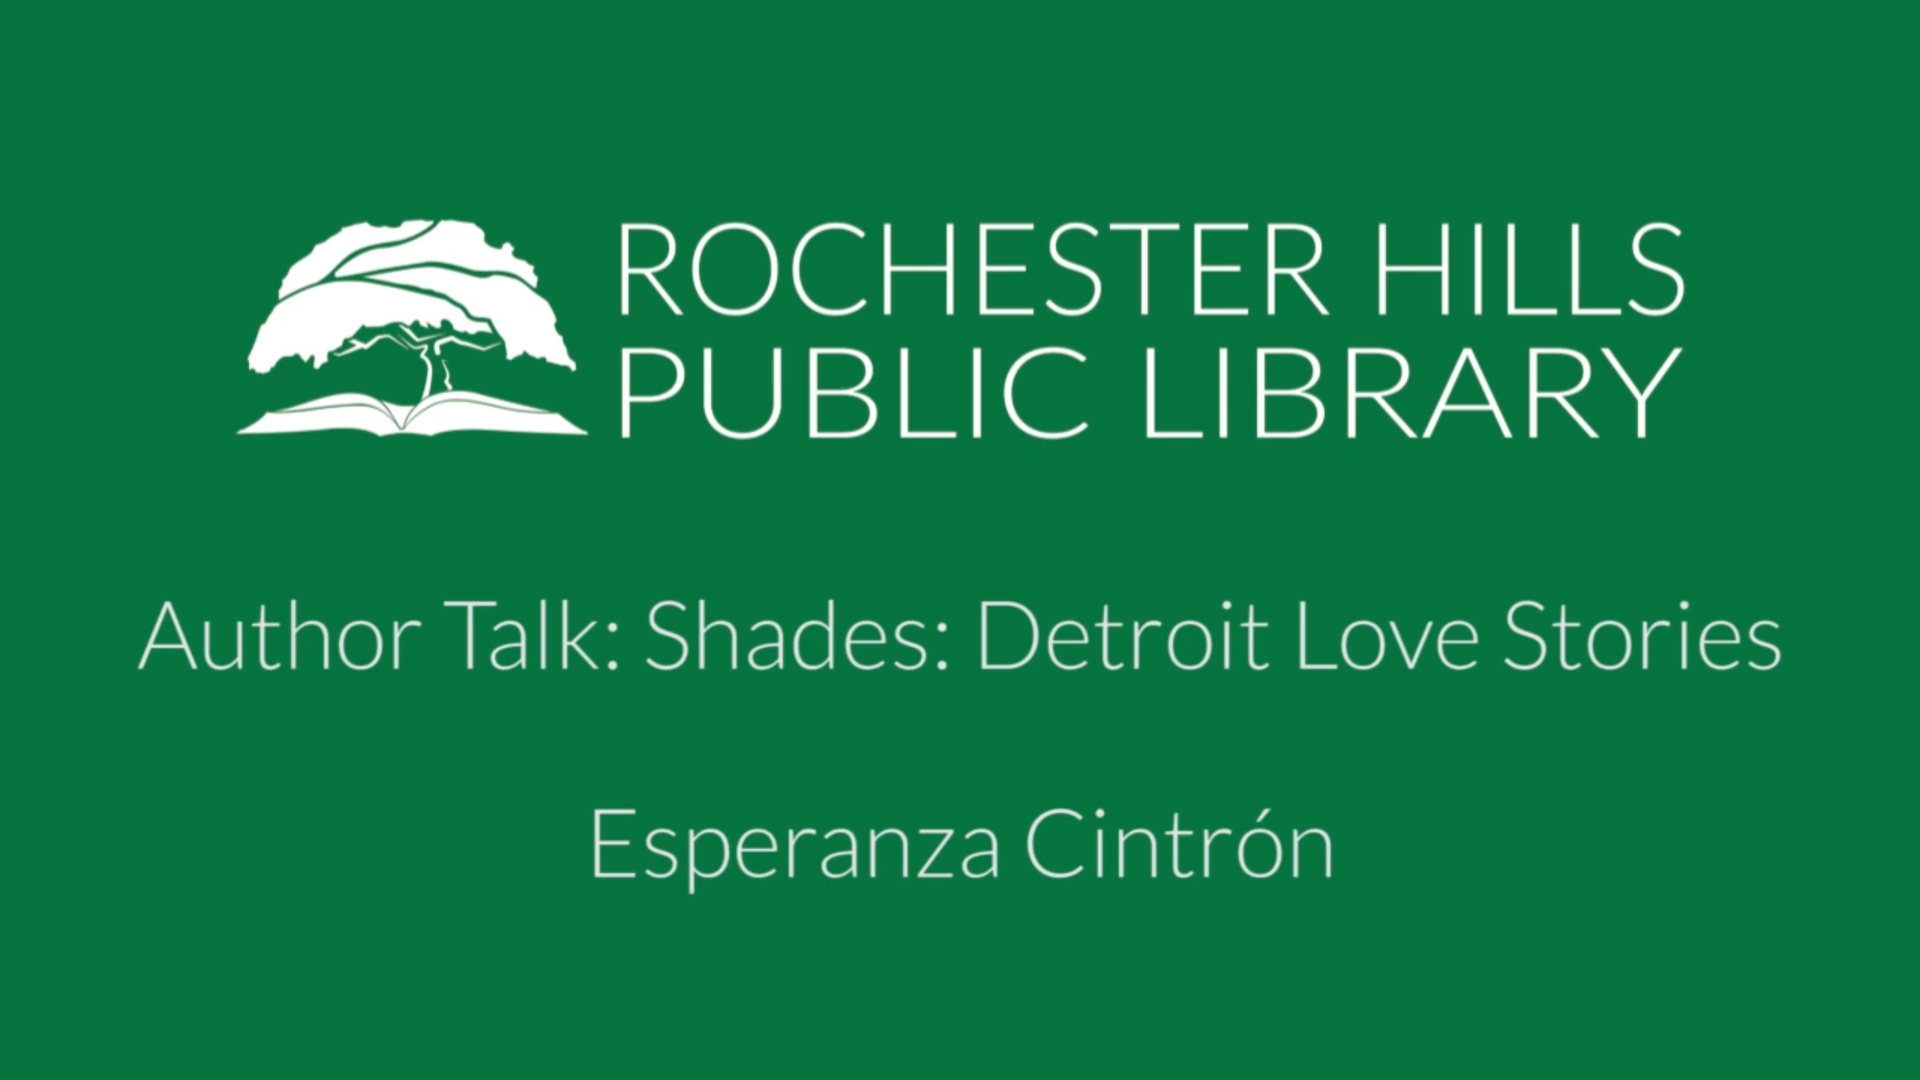 Author Talk: Shades: Detroit Love Stories with Esperanza Cintrón